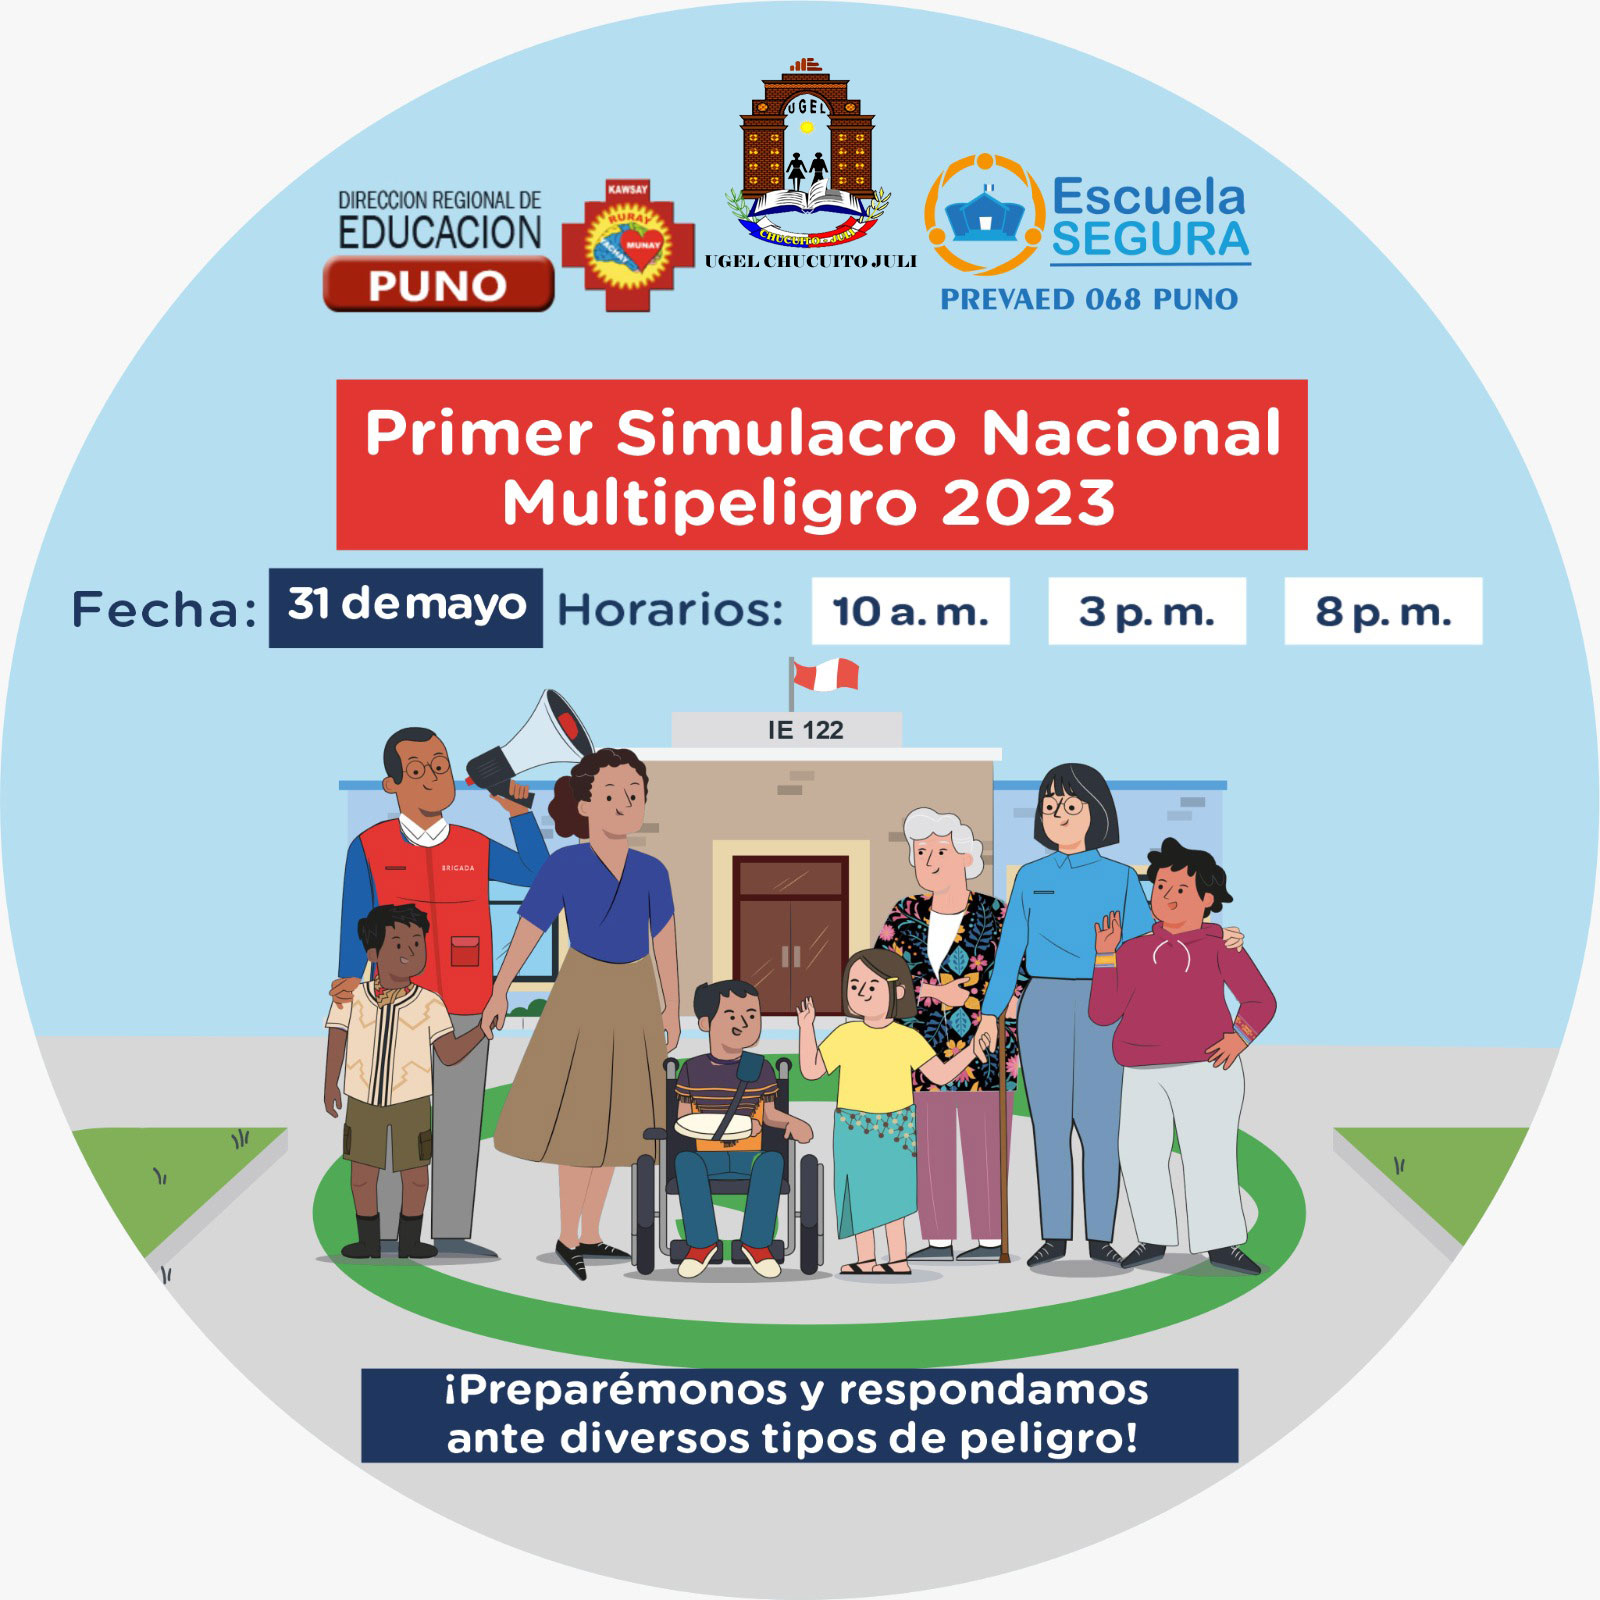 COMUNICADO PREVAED: PARTICIPAR EN EL PRIMER SIMULACRO NACIONAL MULTIPELIGRO 2023